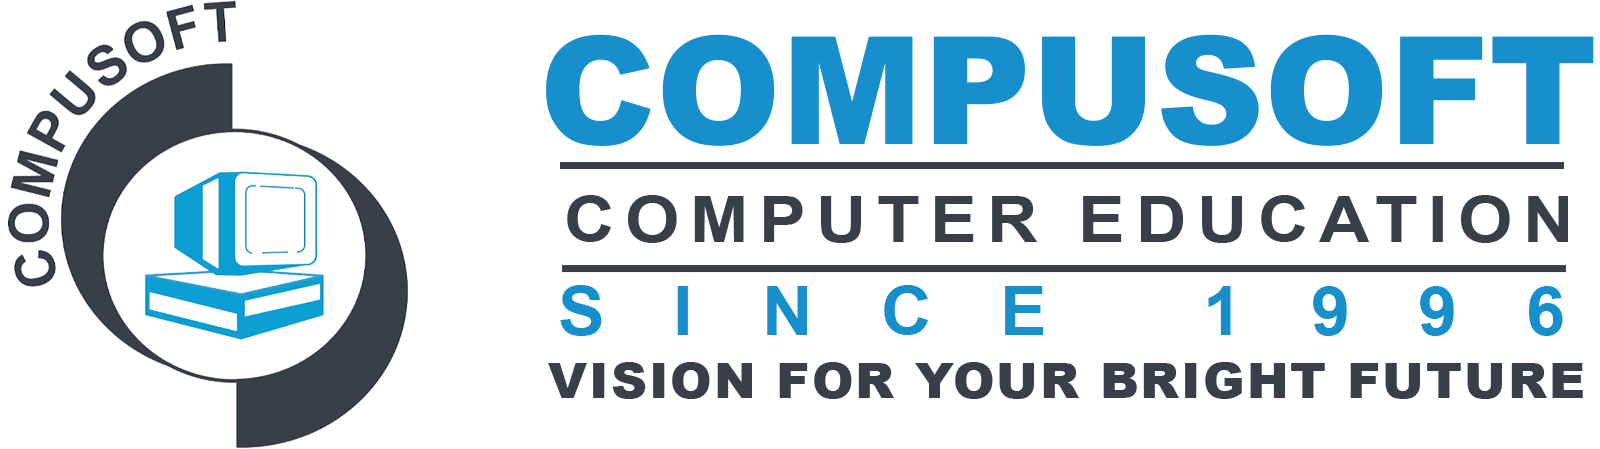 Contact Compusoft | Contact via Compusoft email | Visit Compusoft classes